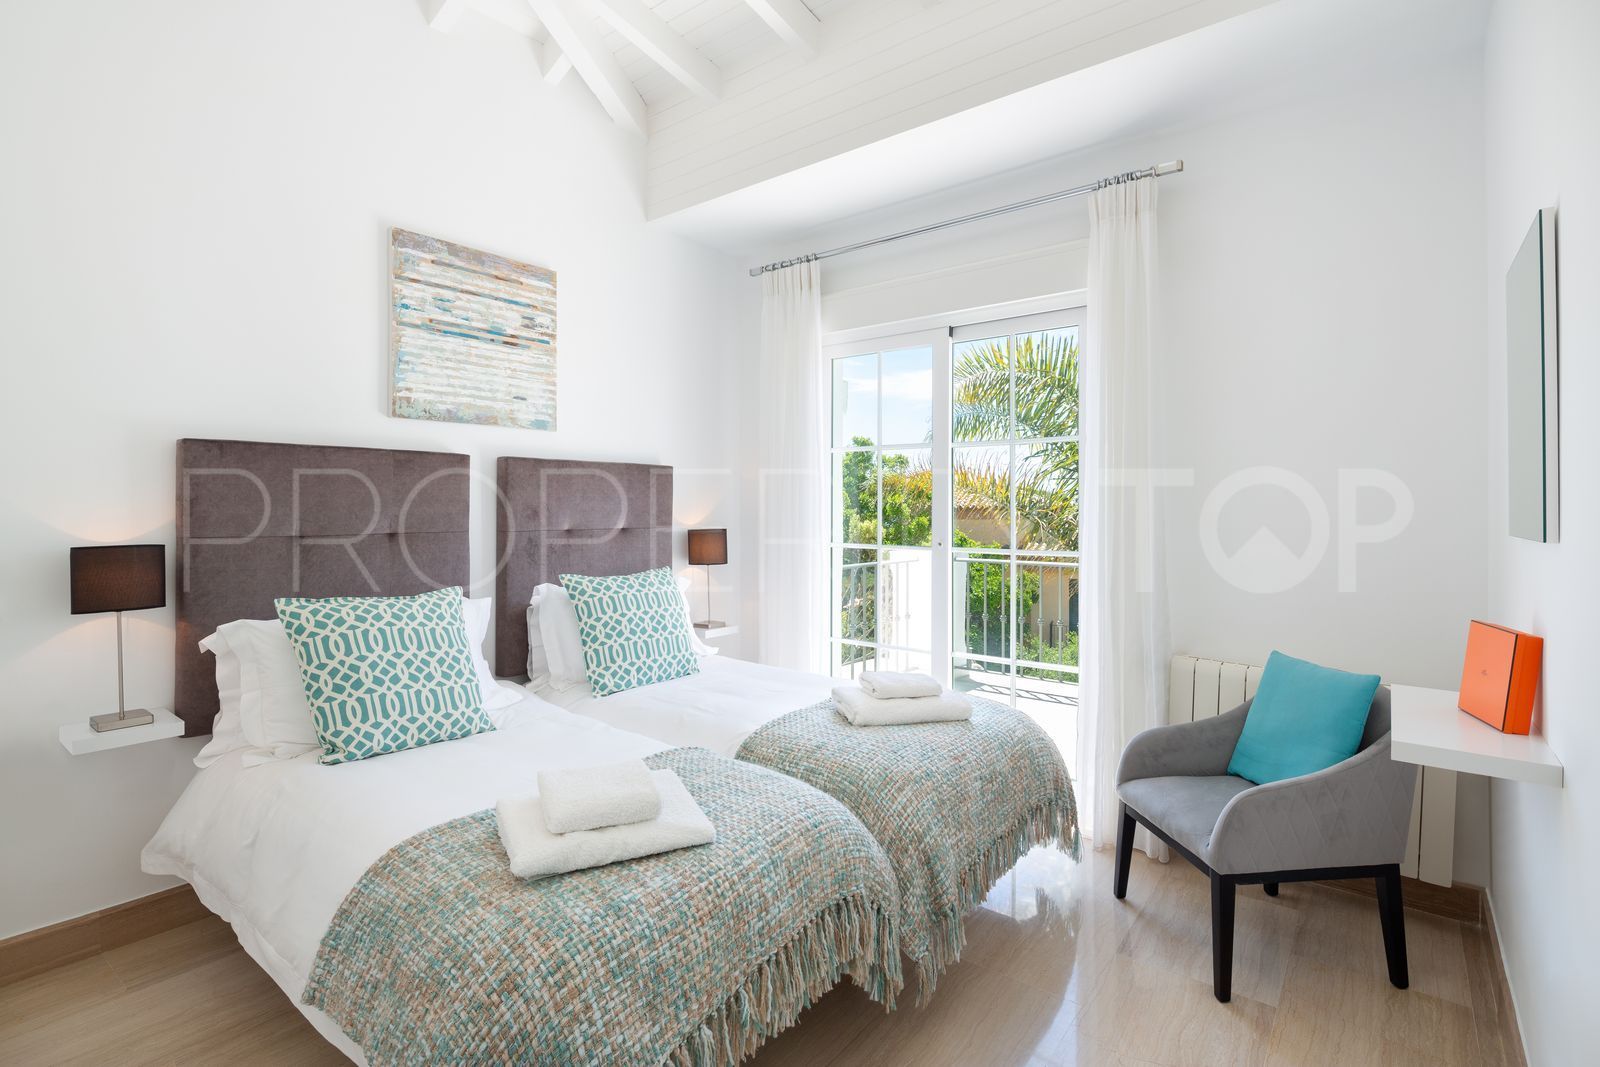 6 bedrooms villa for sale in Elviria